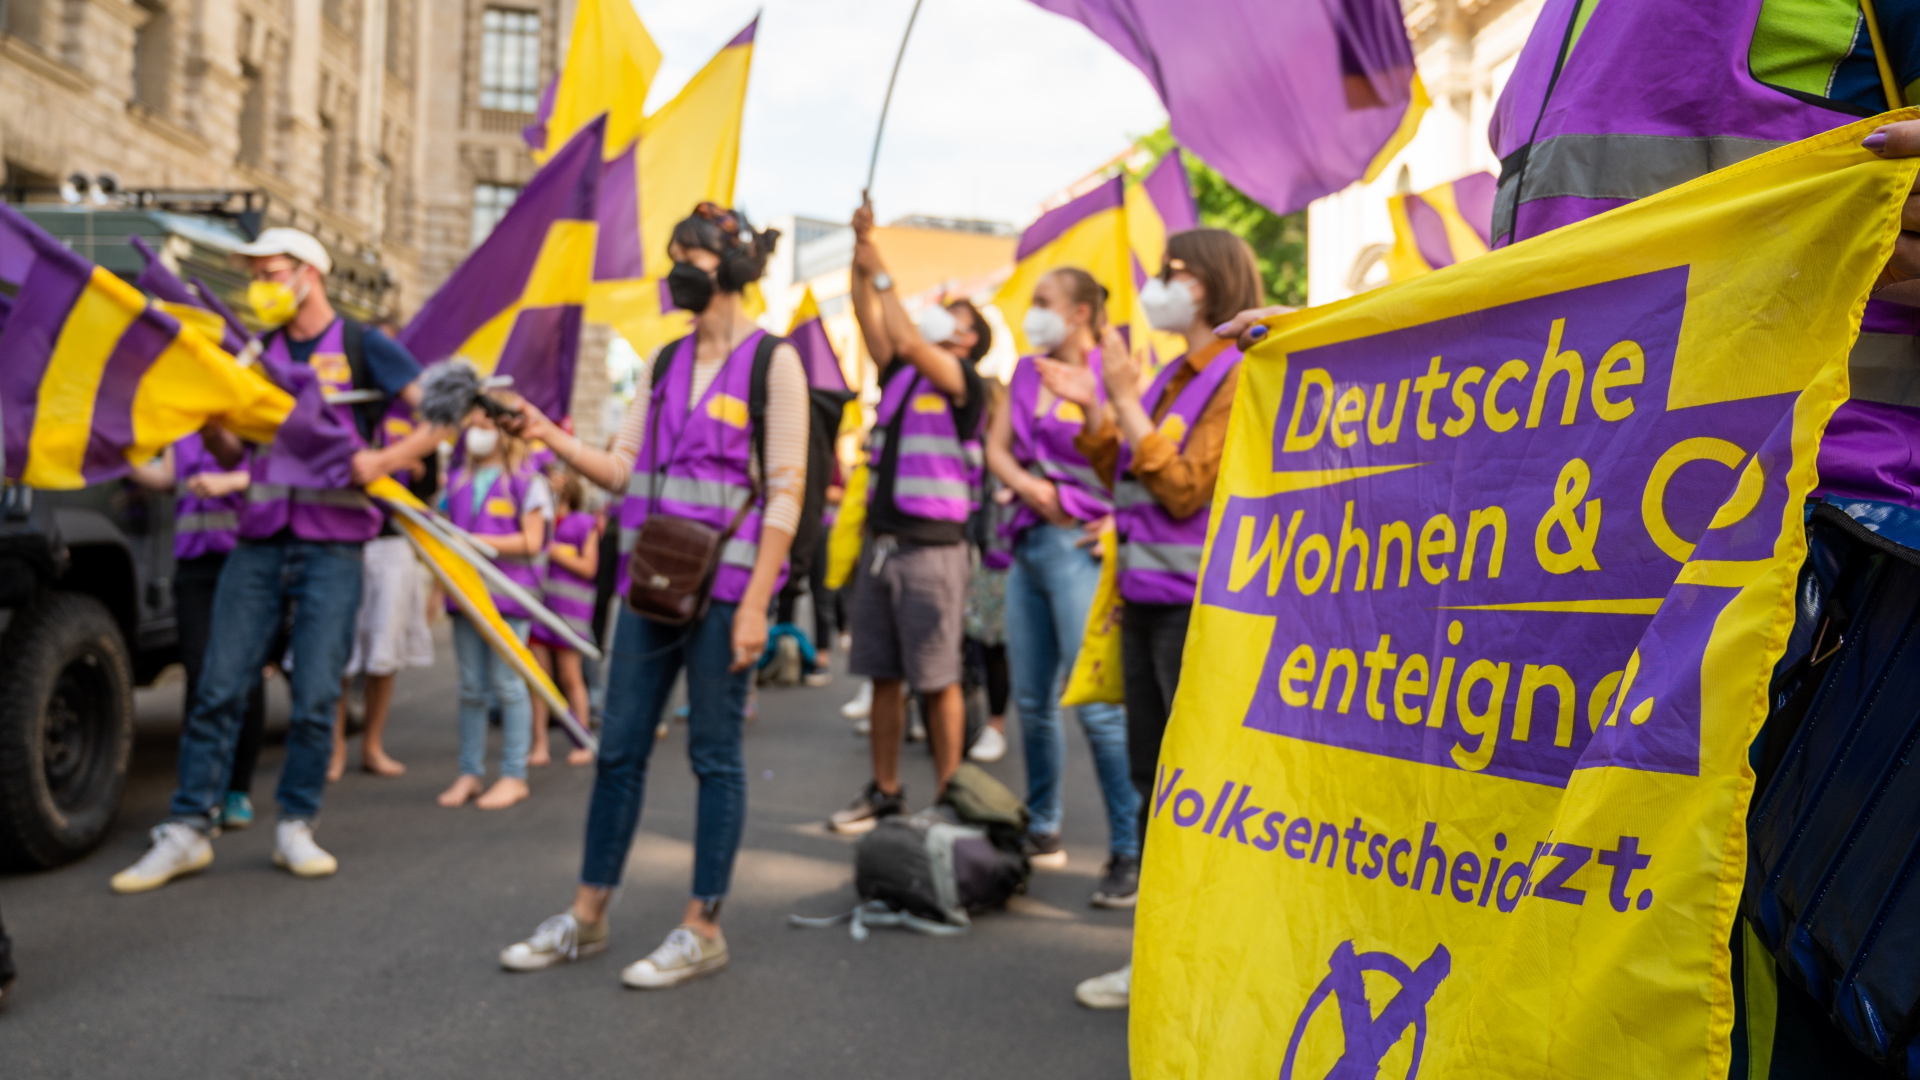 Unterstützer der Initiative "Deutsche Wohnen & Co. enteignen" schwenken ihre Fahnen bei der Übergabe der gesammelten Unterschriften für einen Volksentscheid zur Enteignung von großen Immobilienunternehmen. | dpa